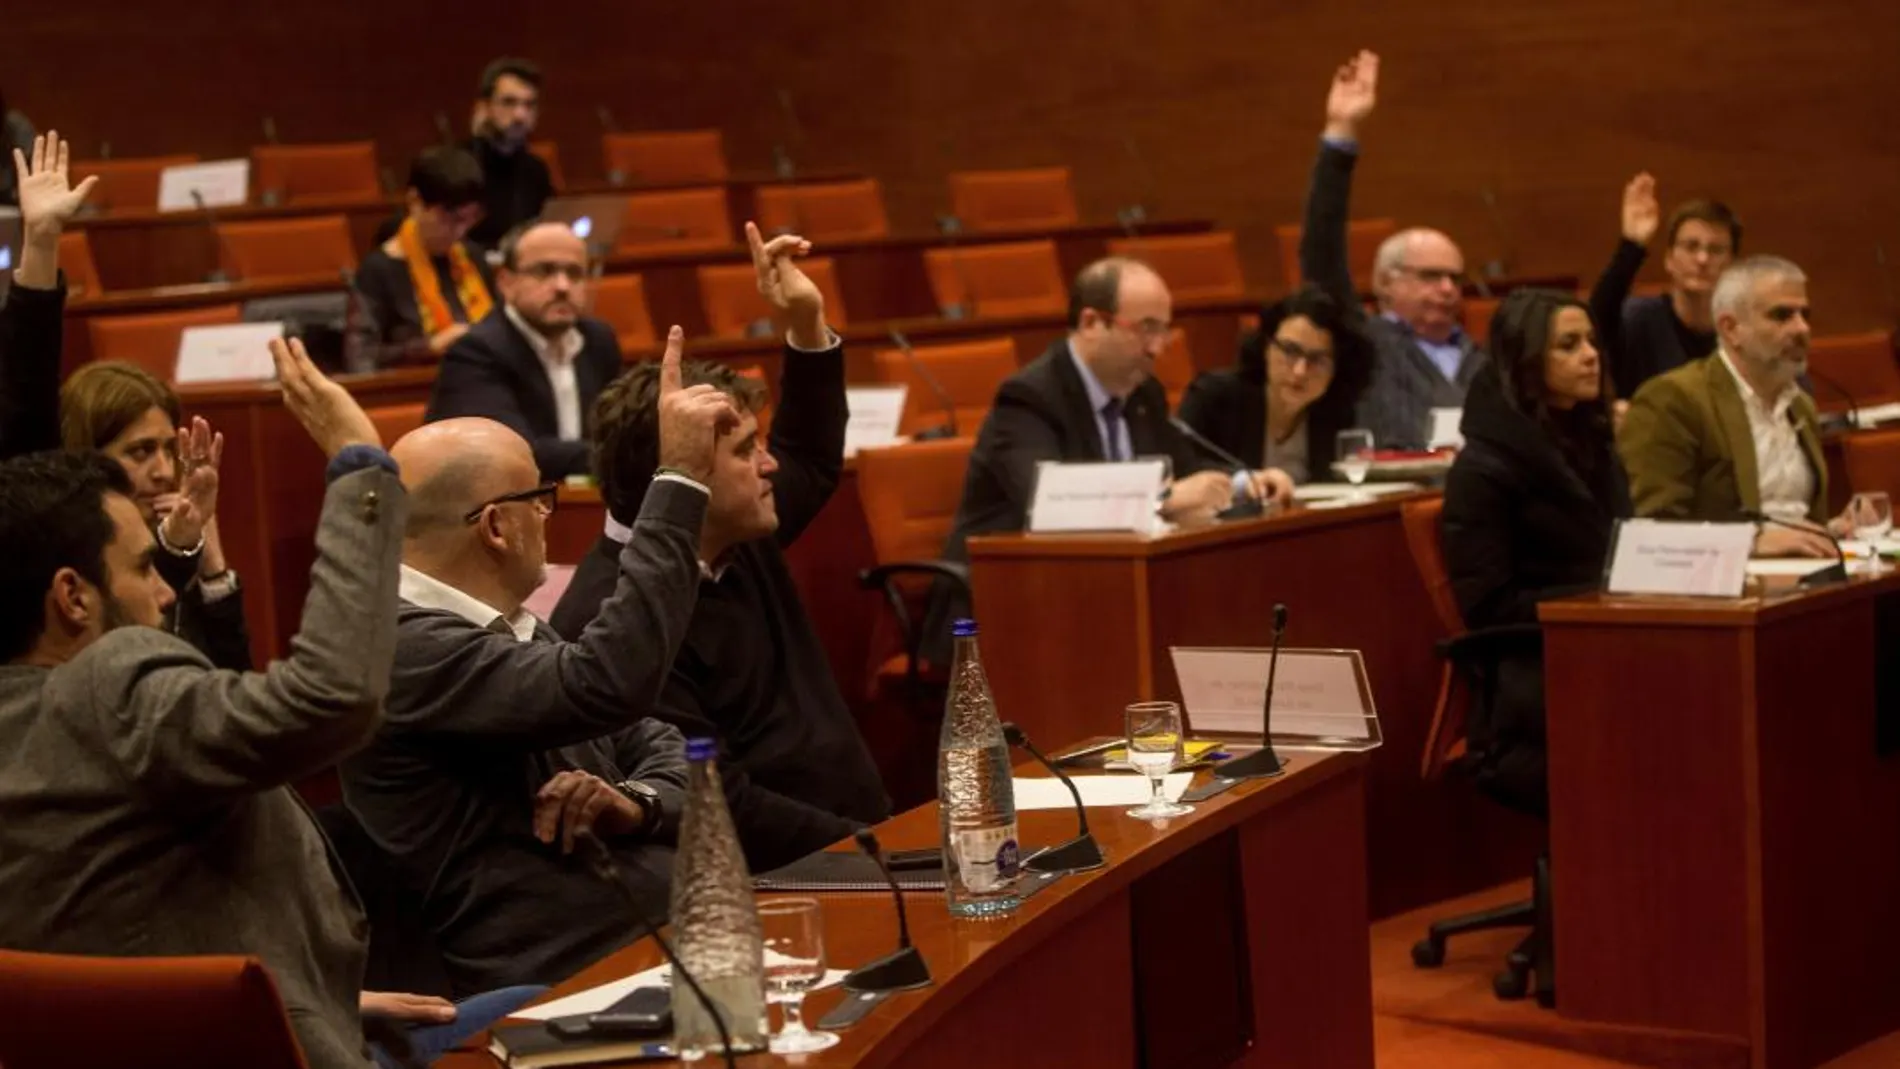 Votación durante la reunión de la Diputación Permanente del Parlament ayer, 27 de diciembre. EFE/Quique García